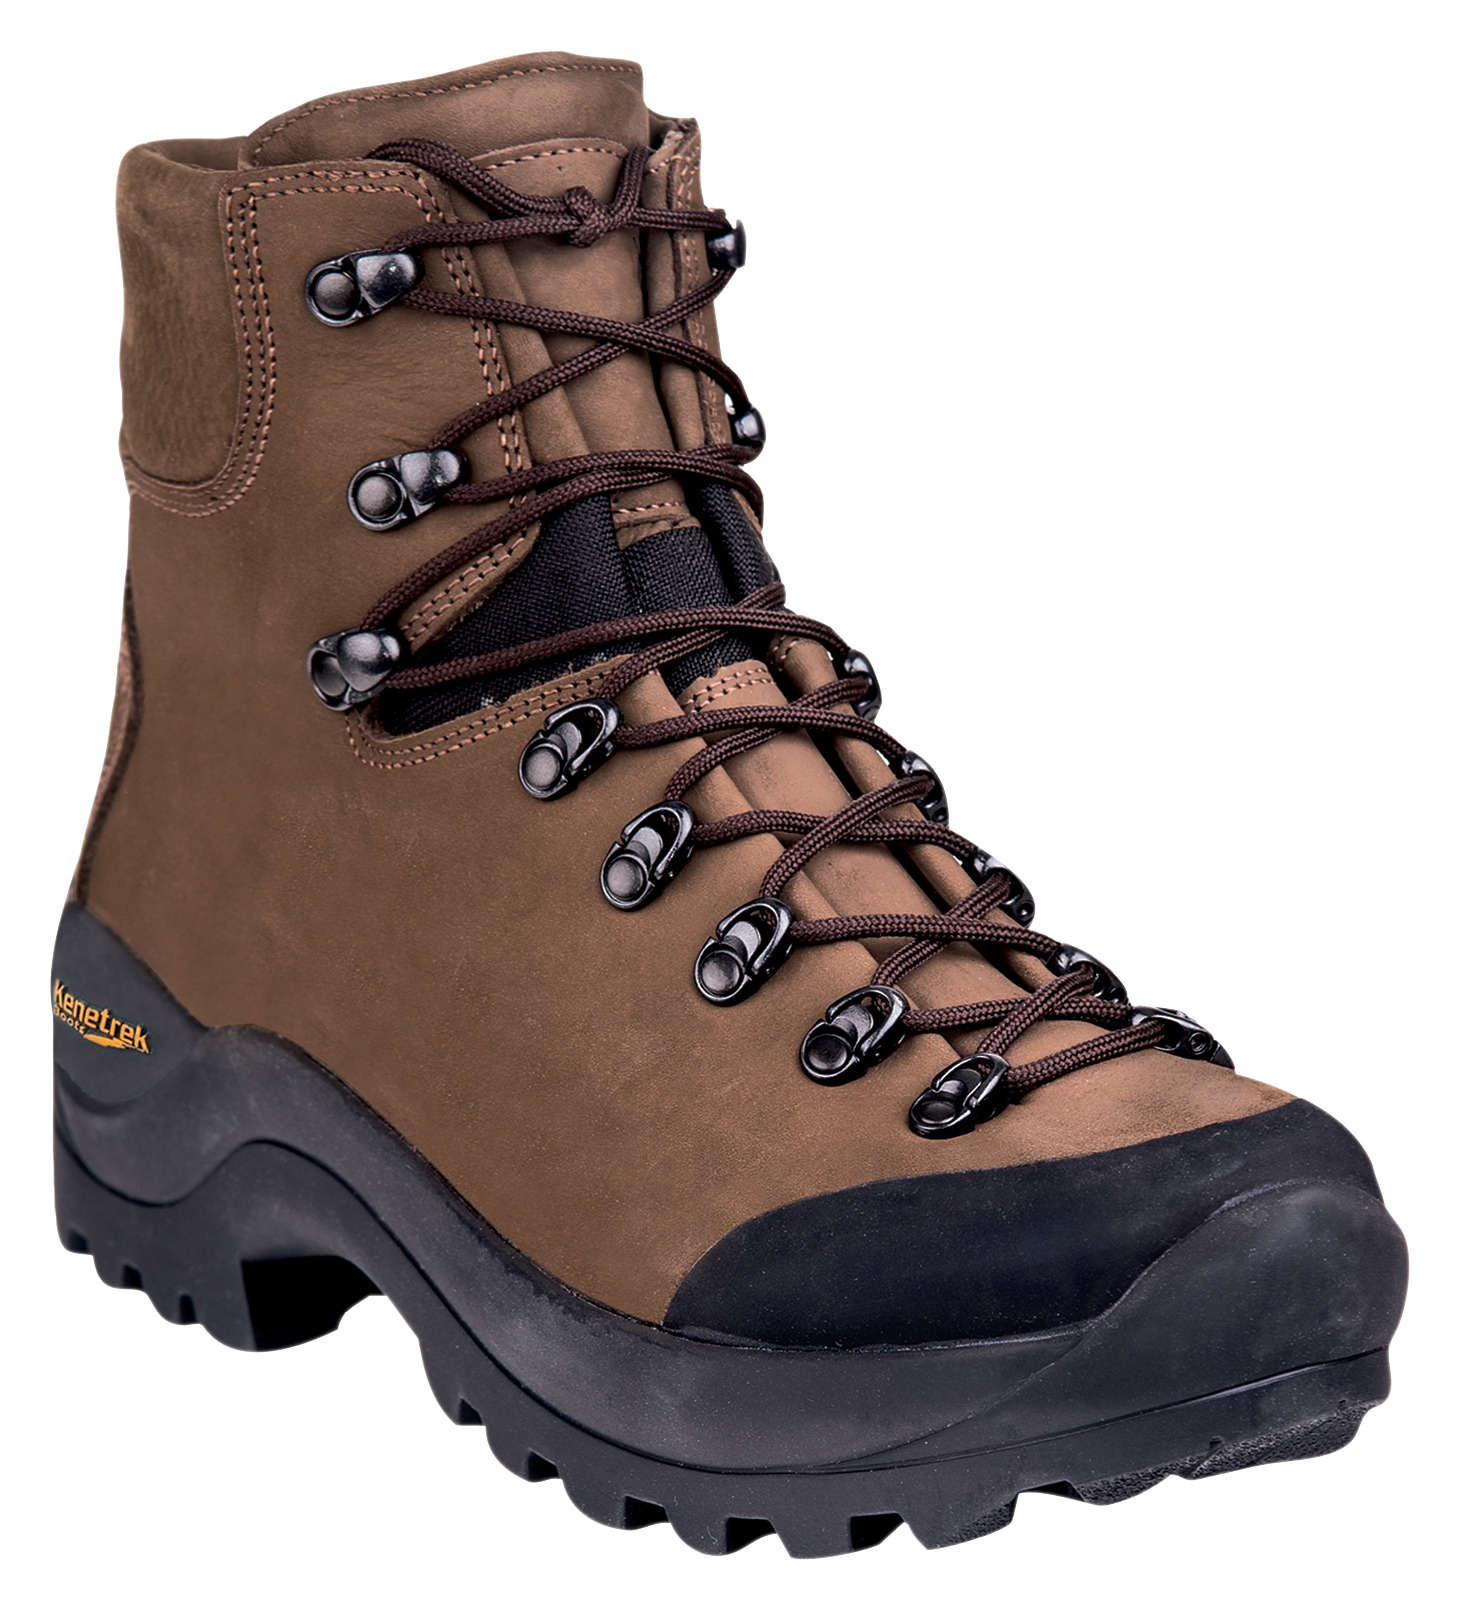 Kenetrek Desert Guide Hunting Boots for Men - Brown - 11.5M